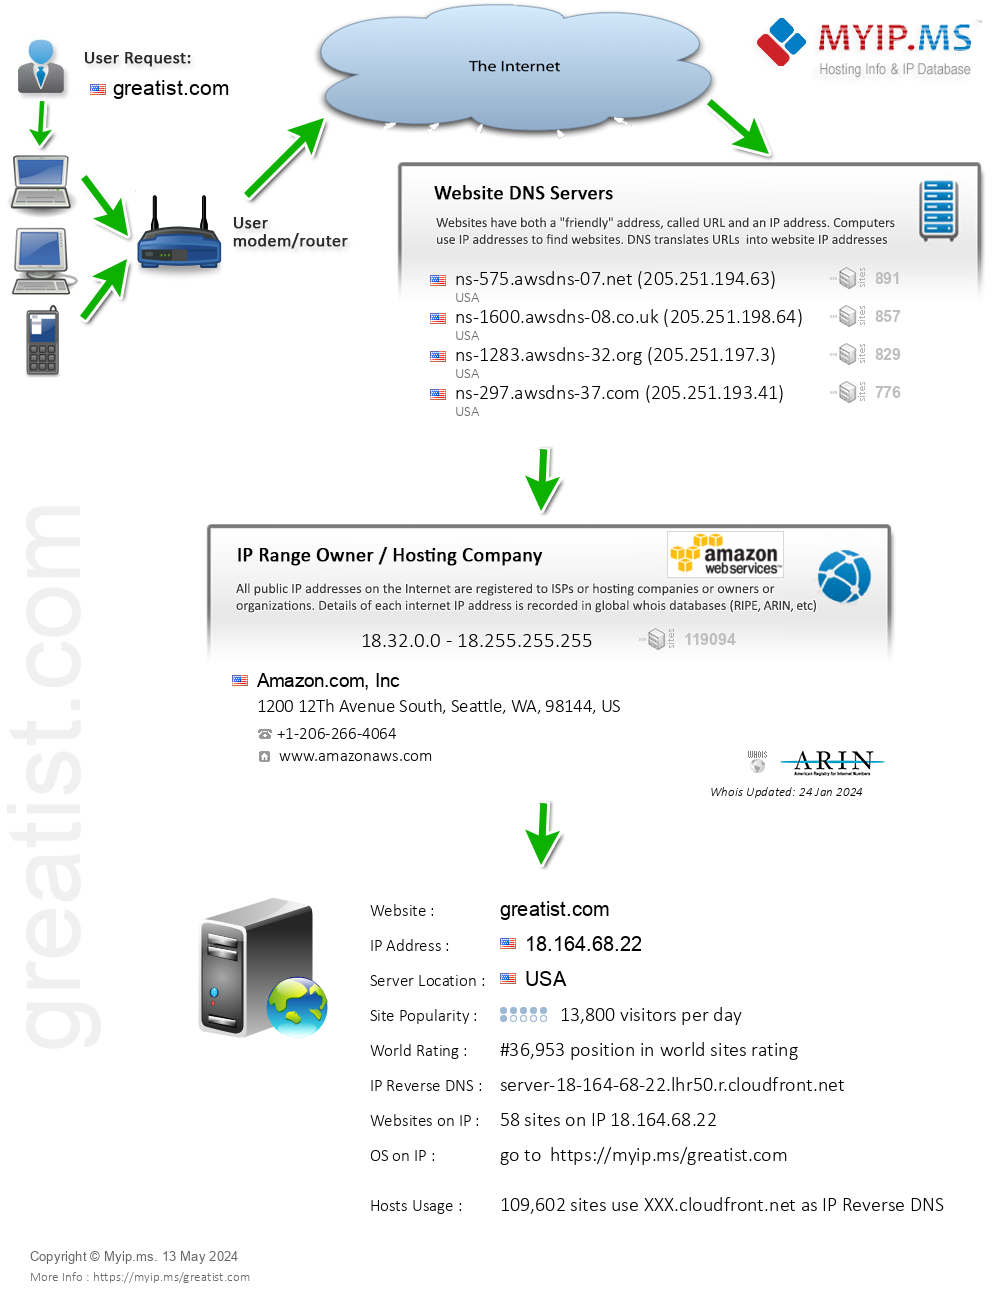 Greatist.com - Website Hosting Visual IP Diagram